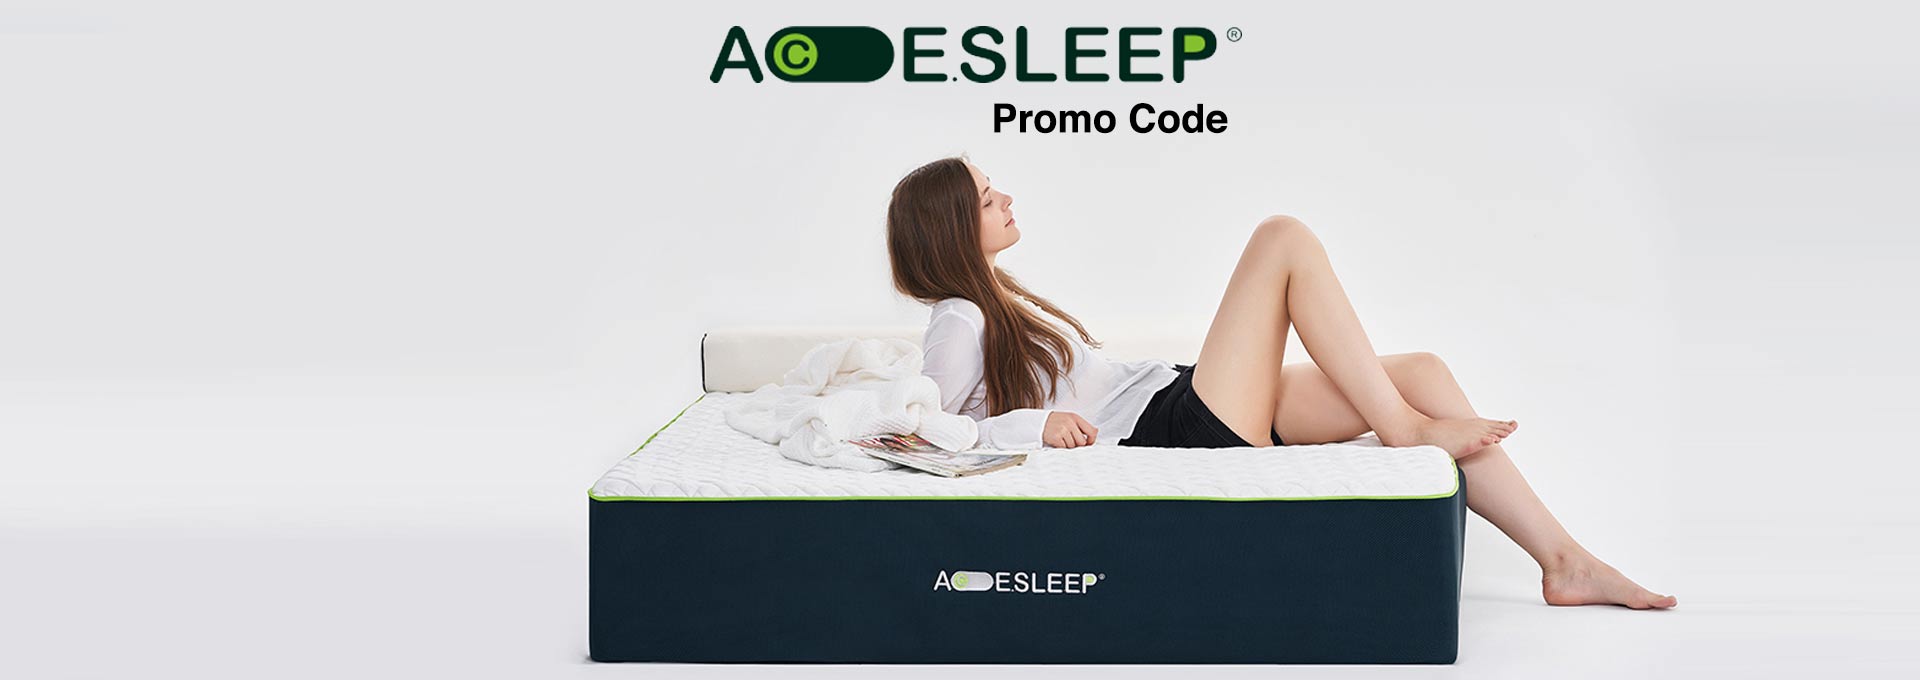 Acesleep Mattress Promo Code Coupon